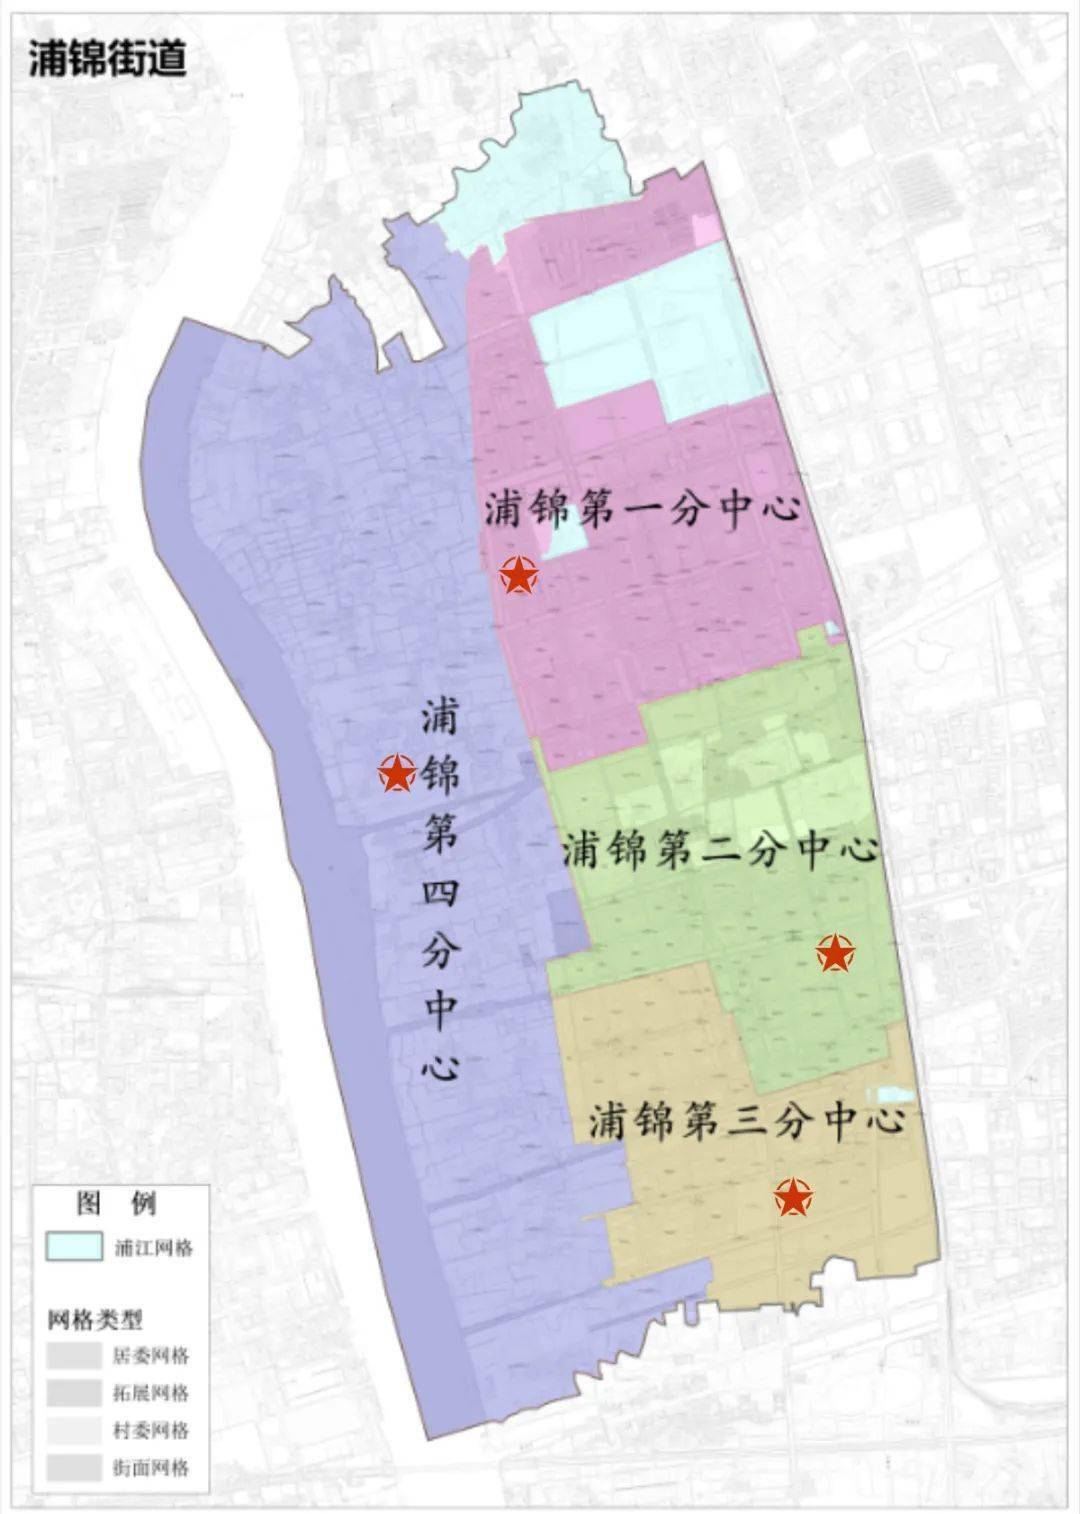 浦锦街道 地图图片